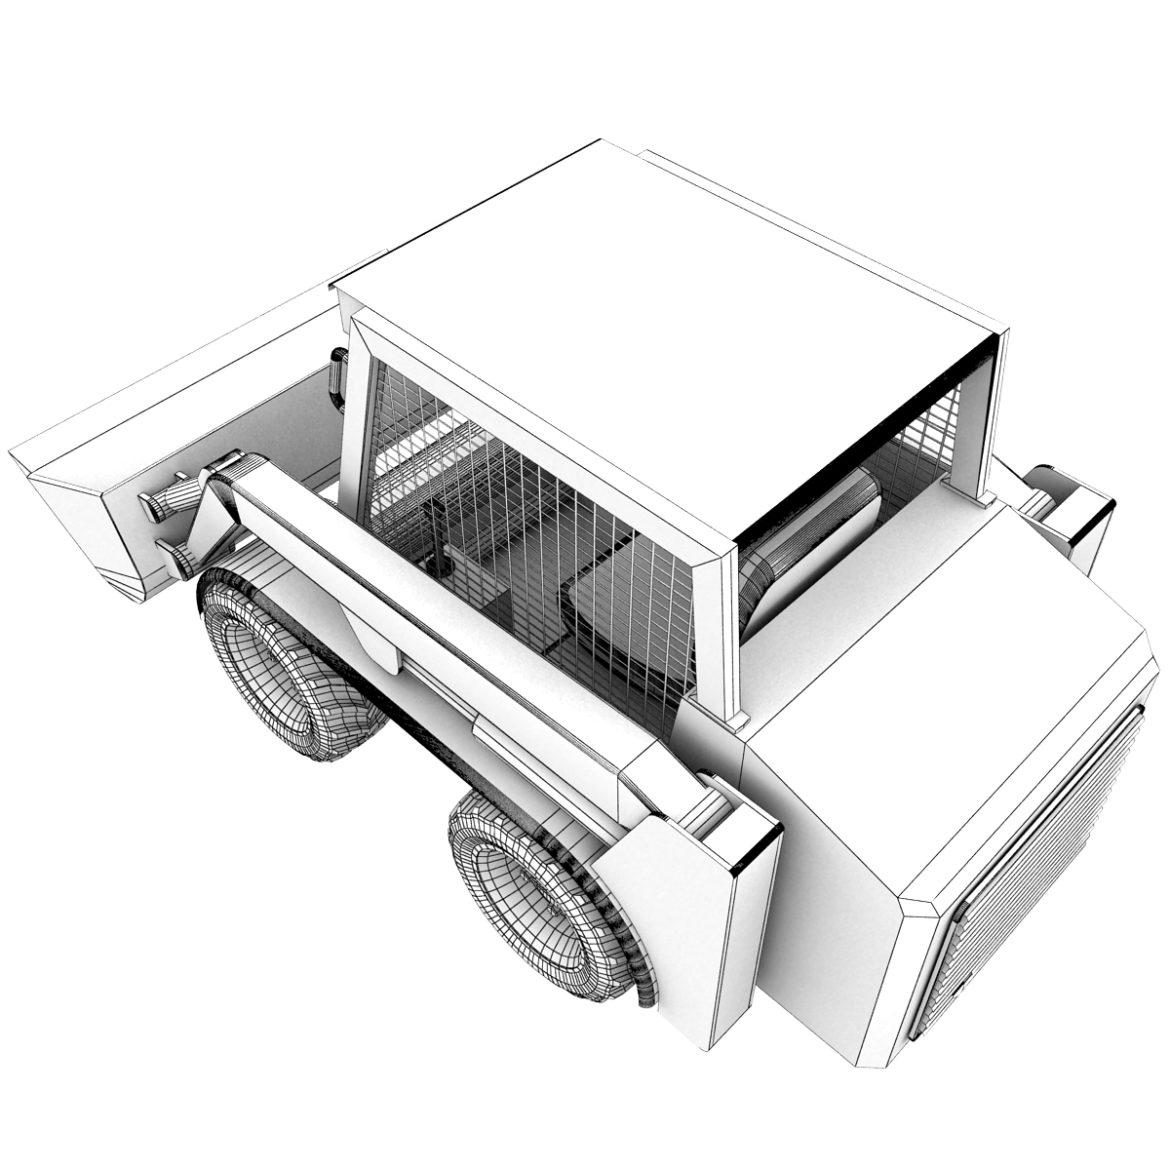 rigged bobcat – skid steer loader 3d model 3ds max fbx obj 293858